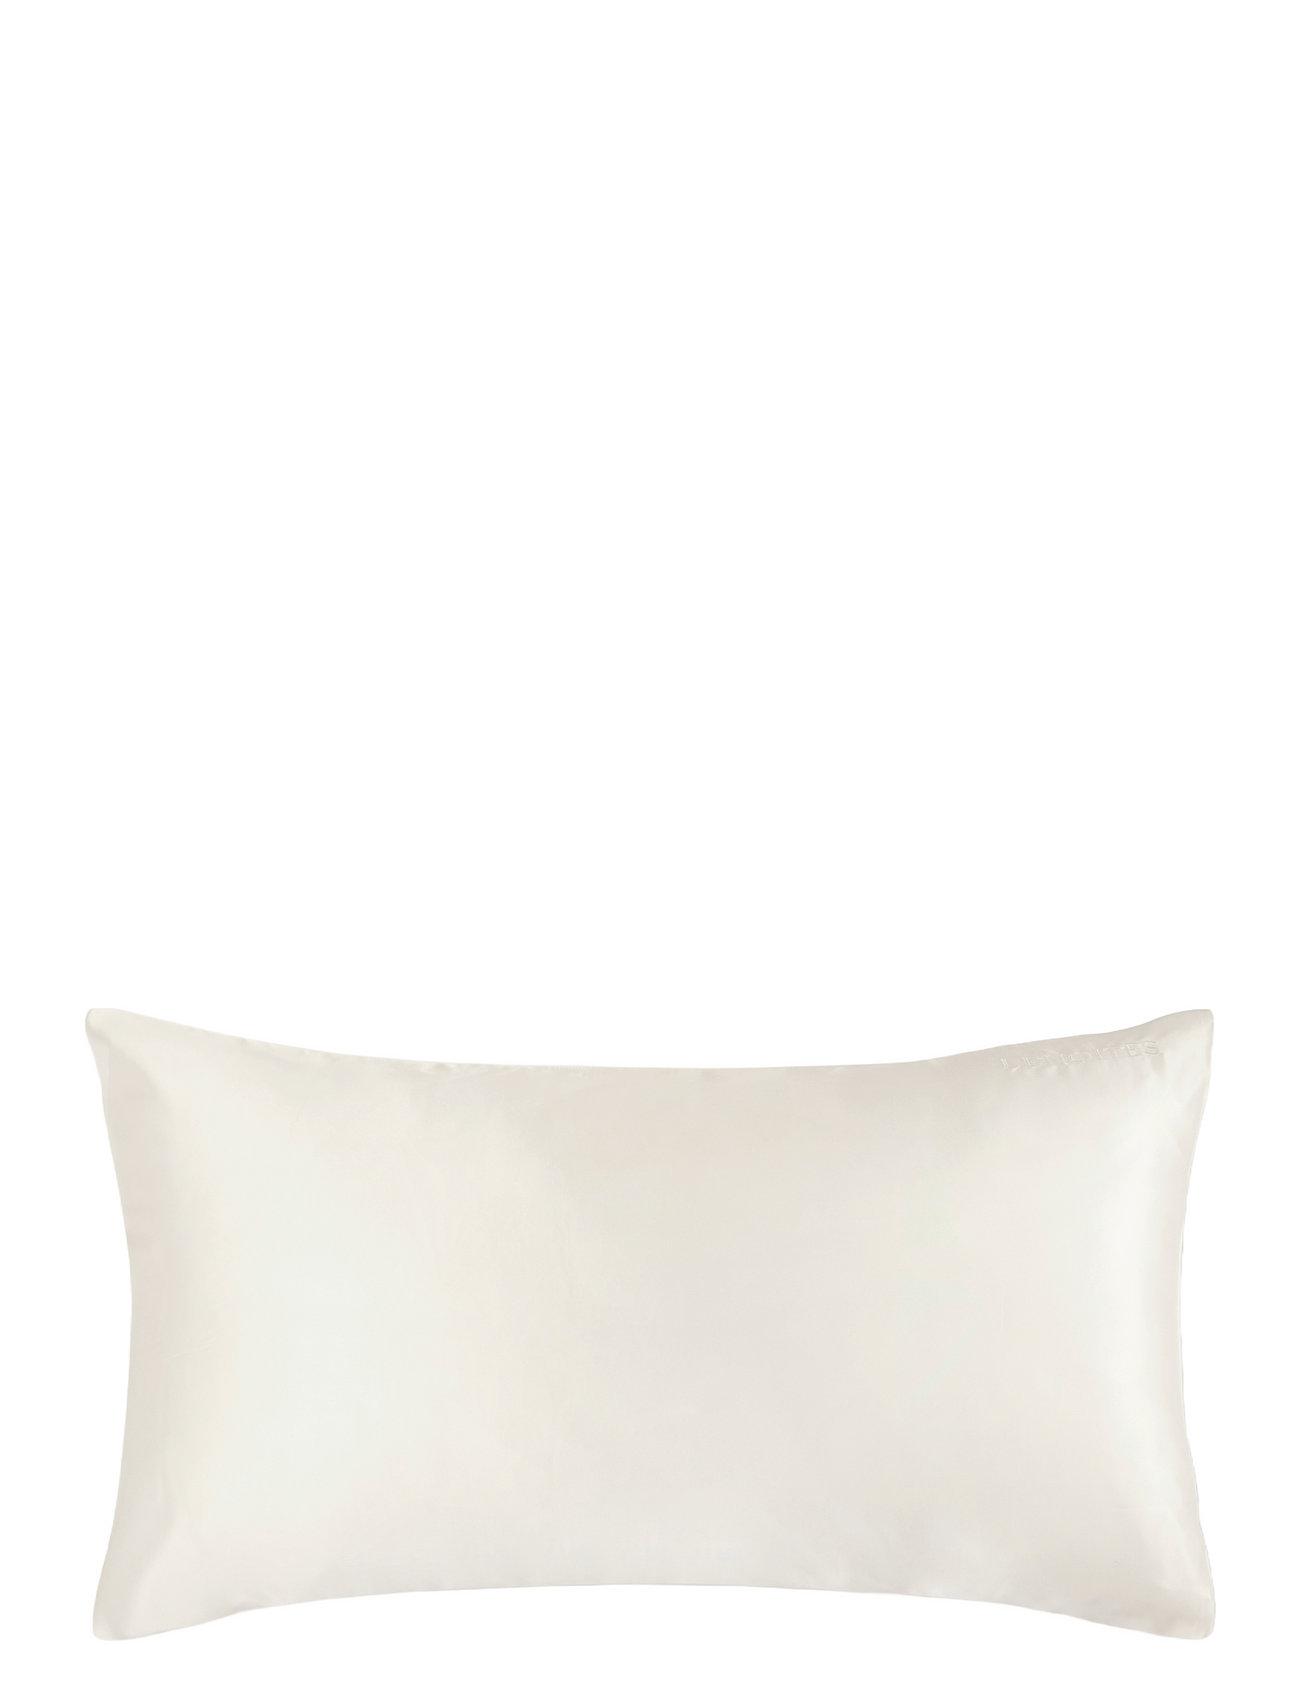 Mulberry Silk Pillowcase Home Textiles Bedtextiles Pillow Cases White Lenoites